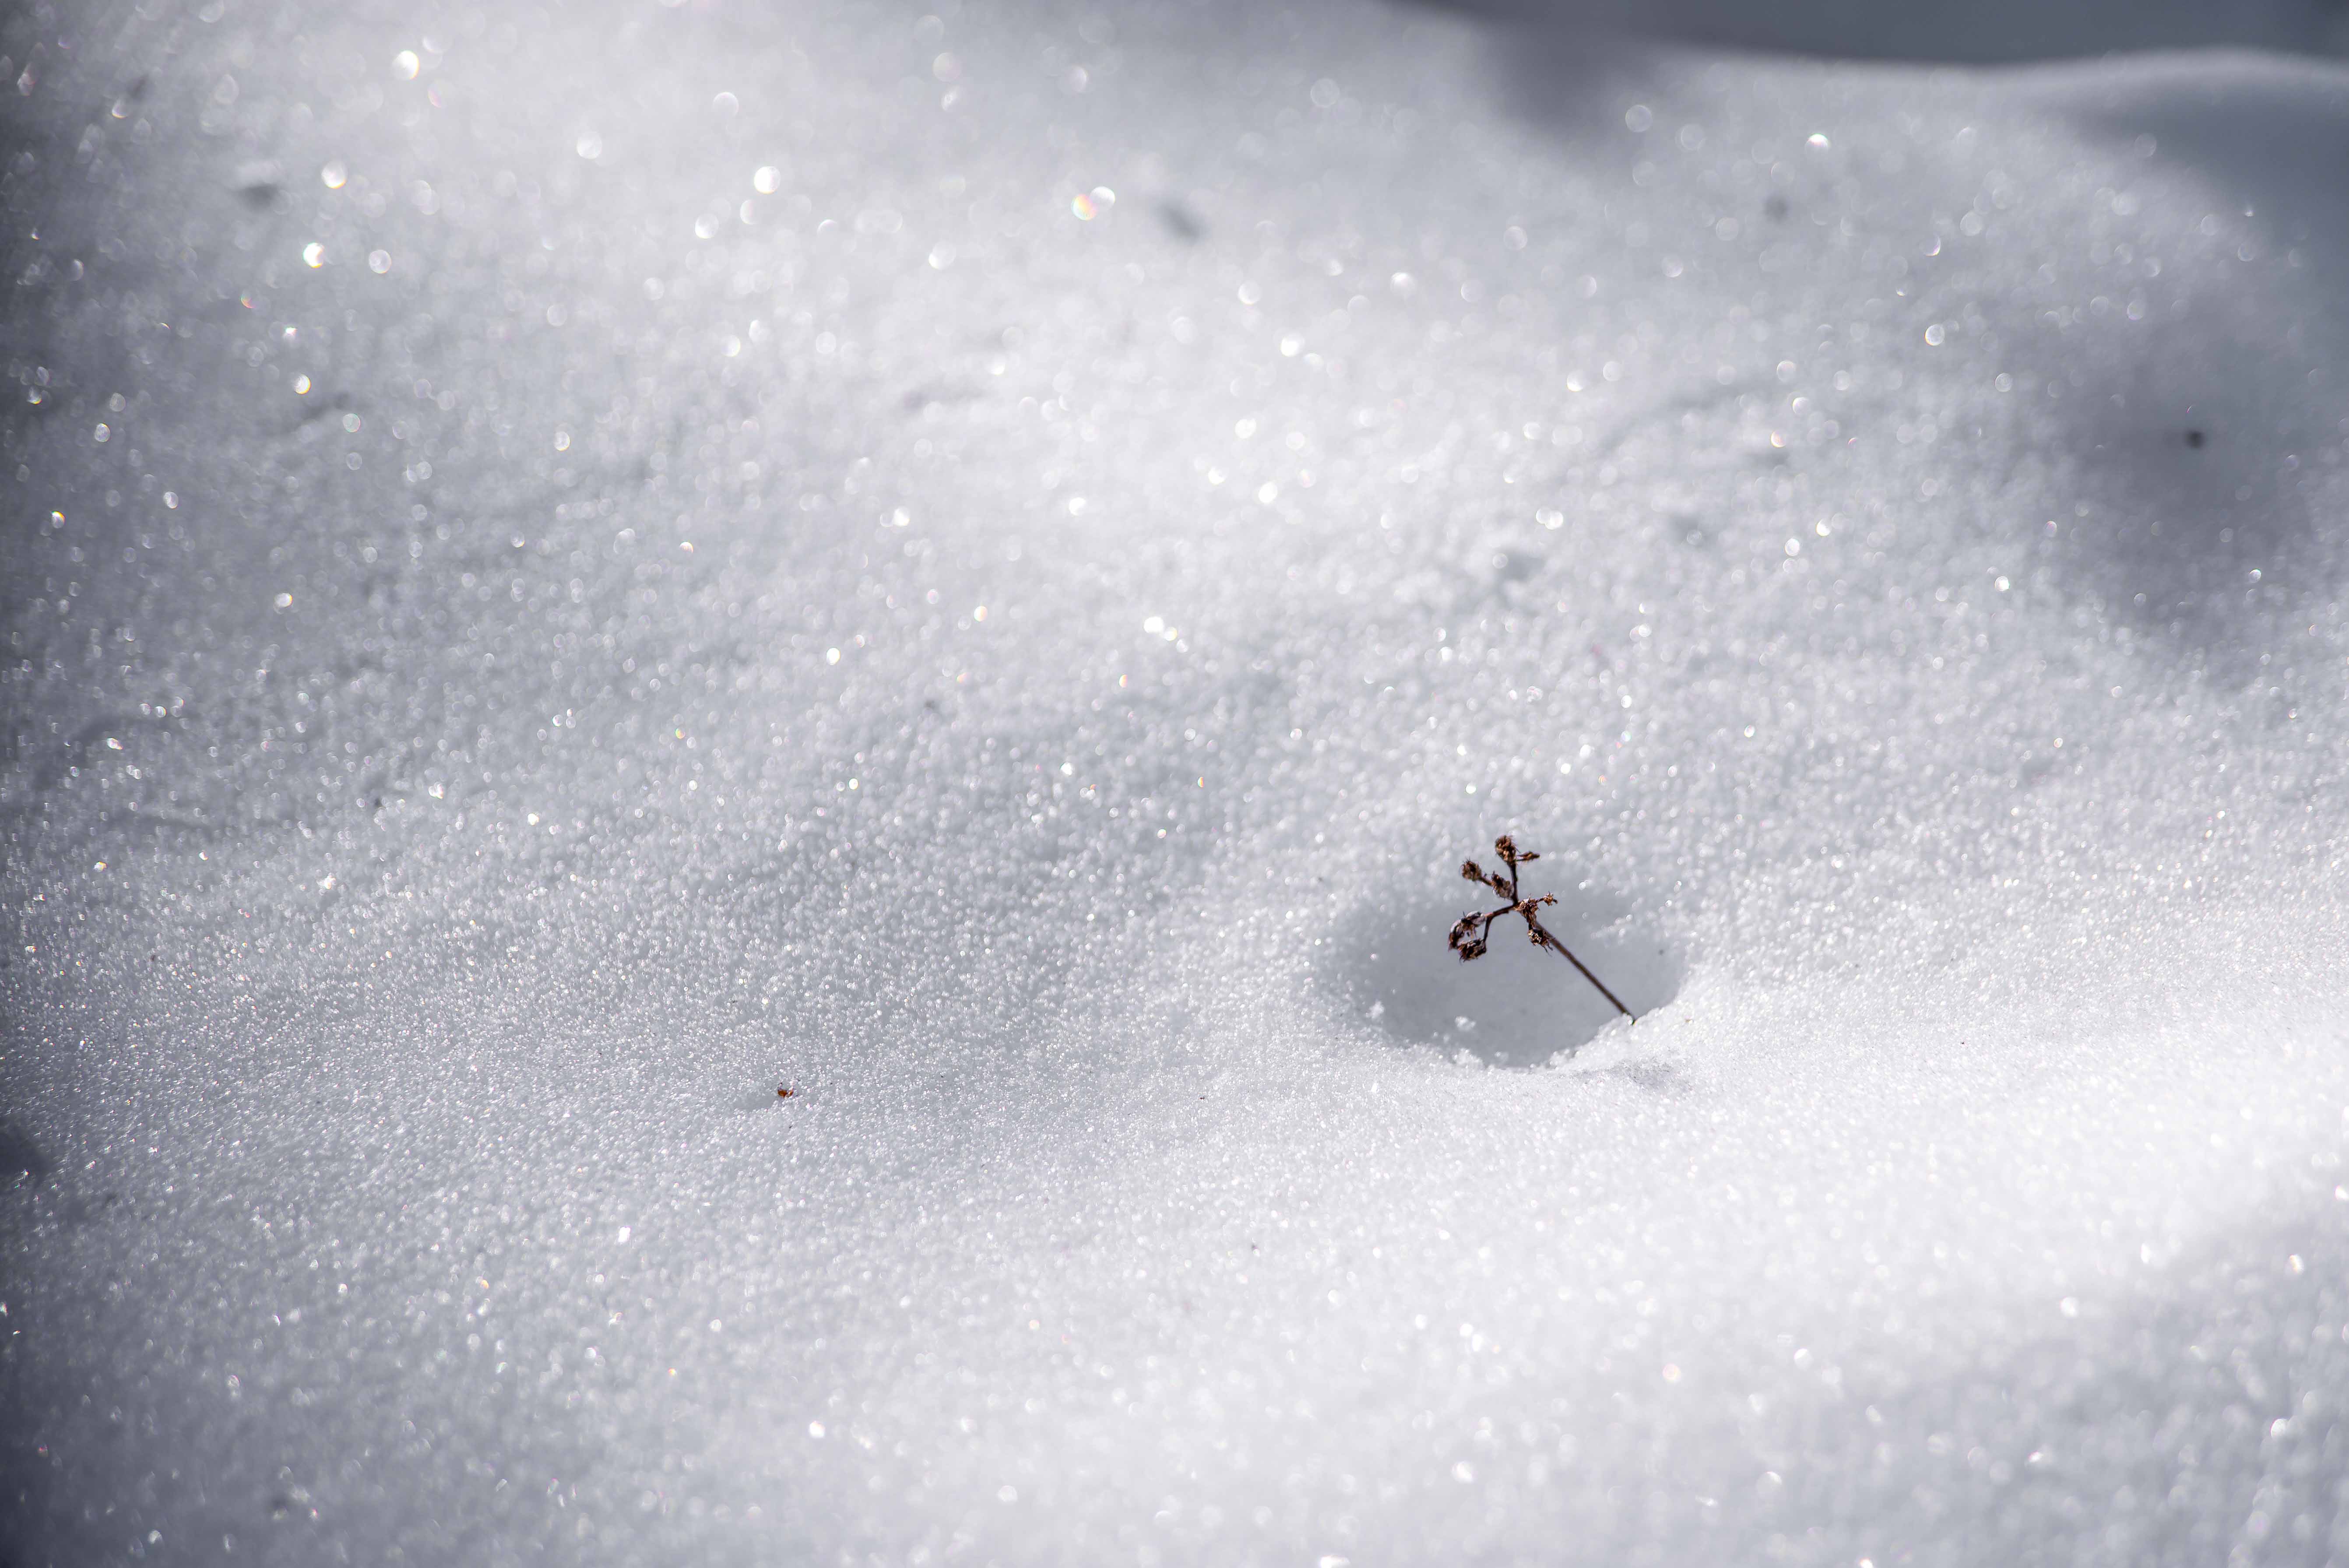 Gréolières-les-neiges station de ski Alpes du sud Nice raquette randonnée ski de fond